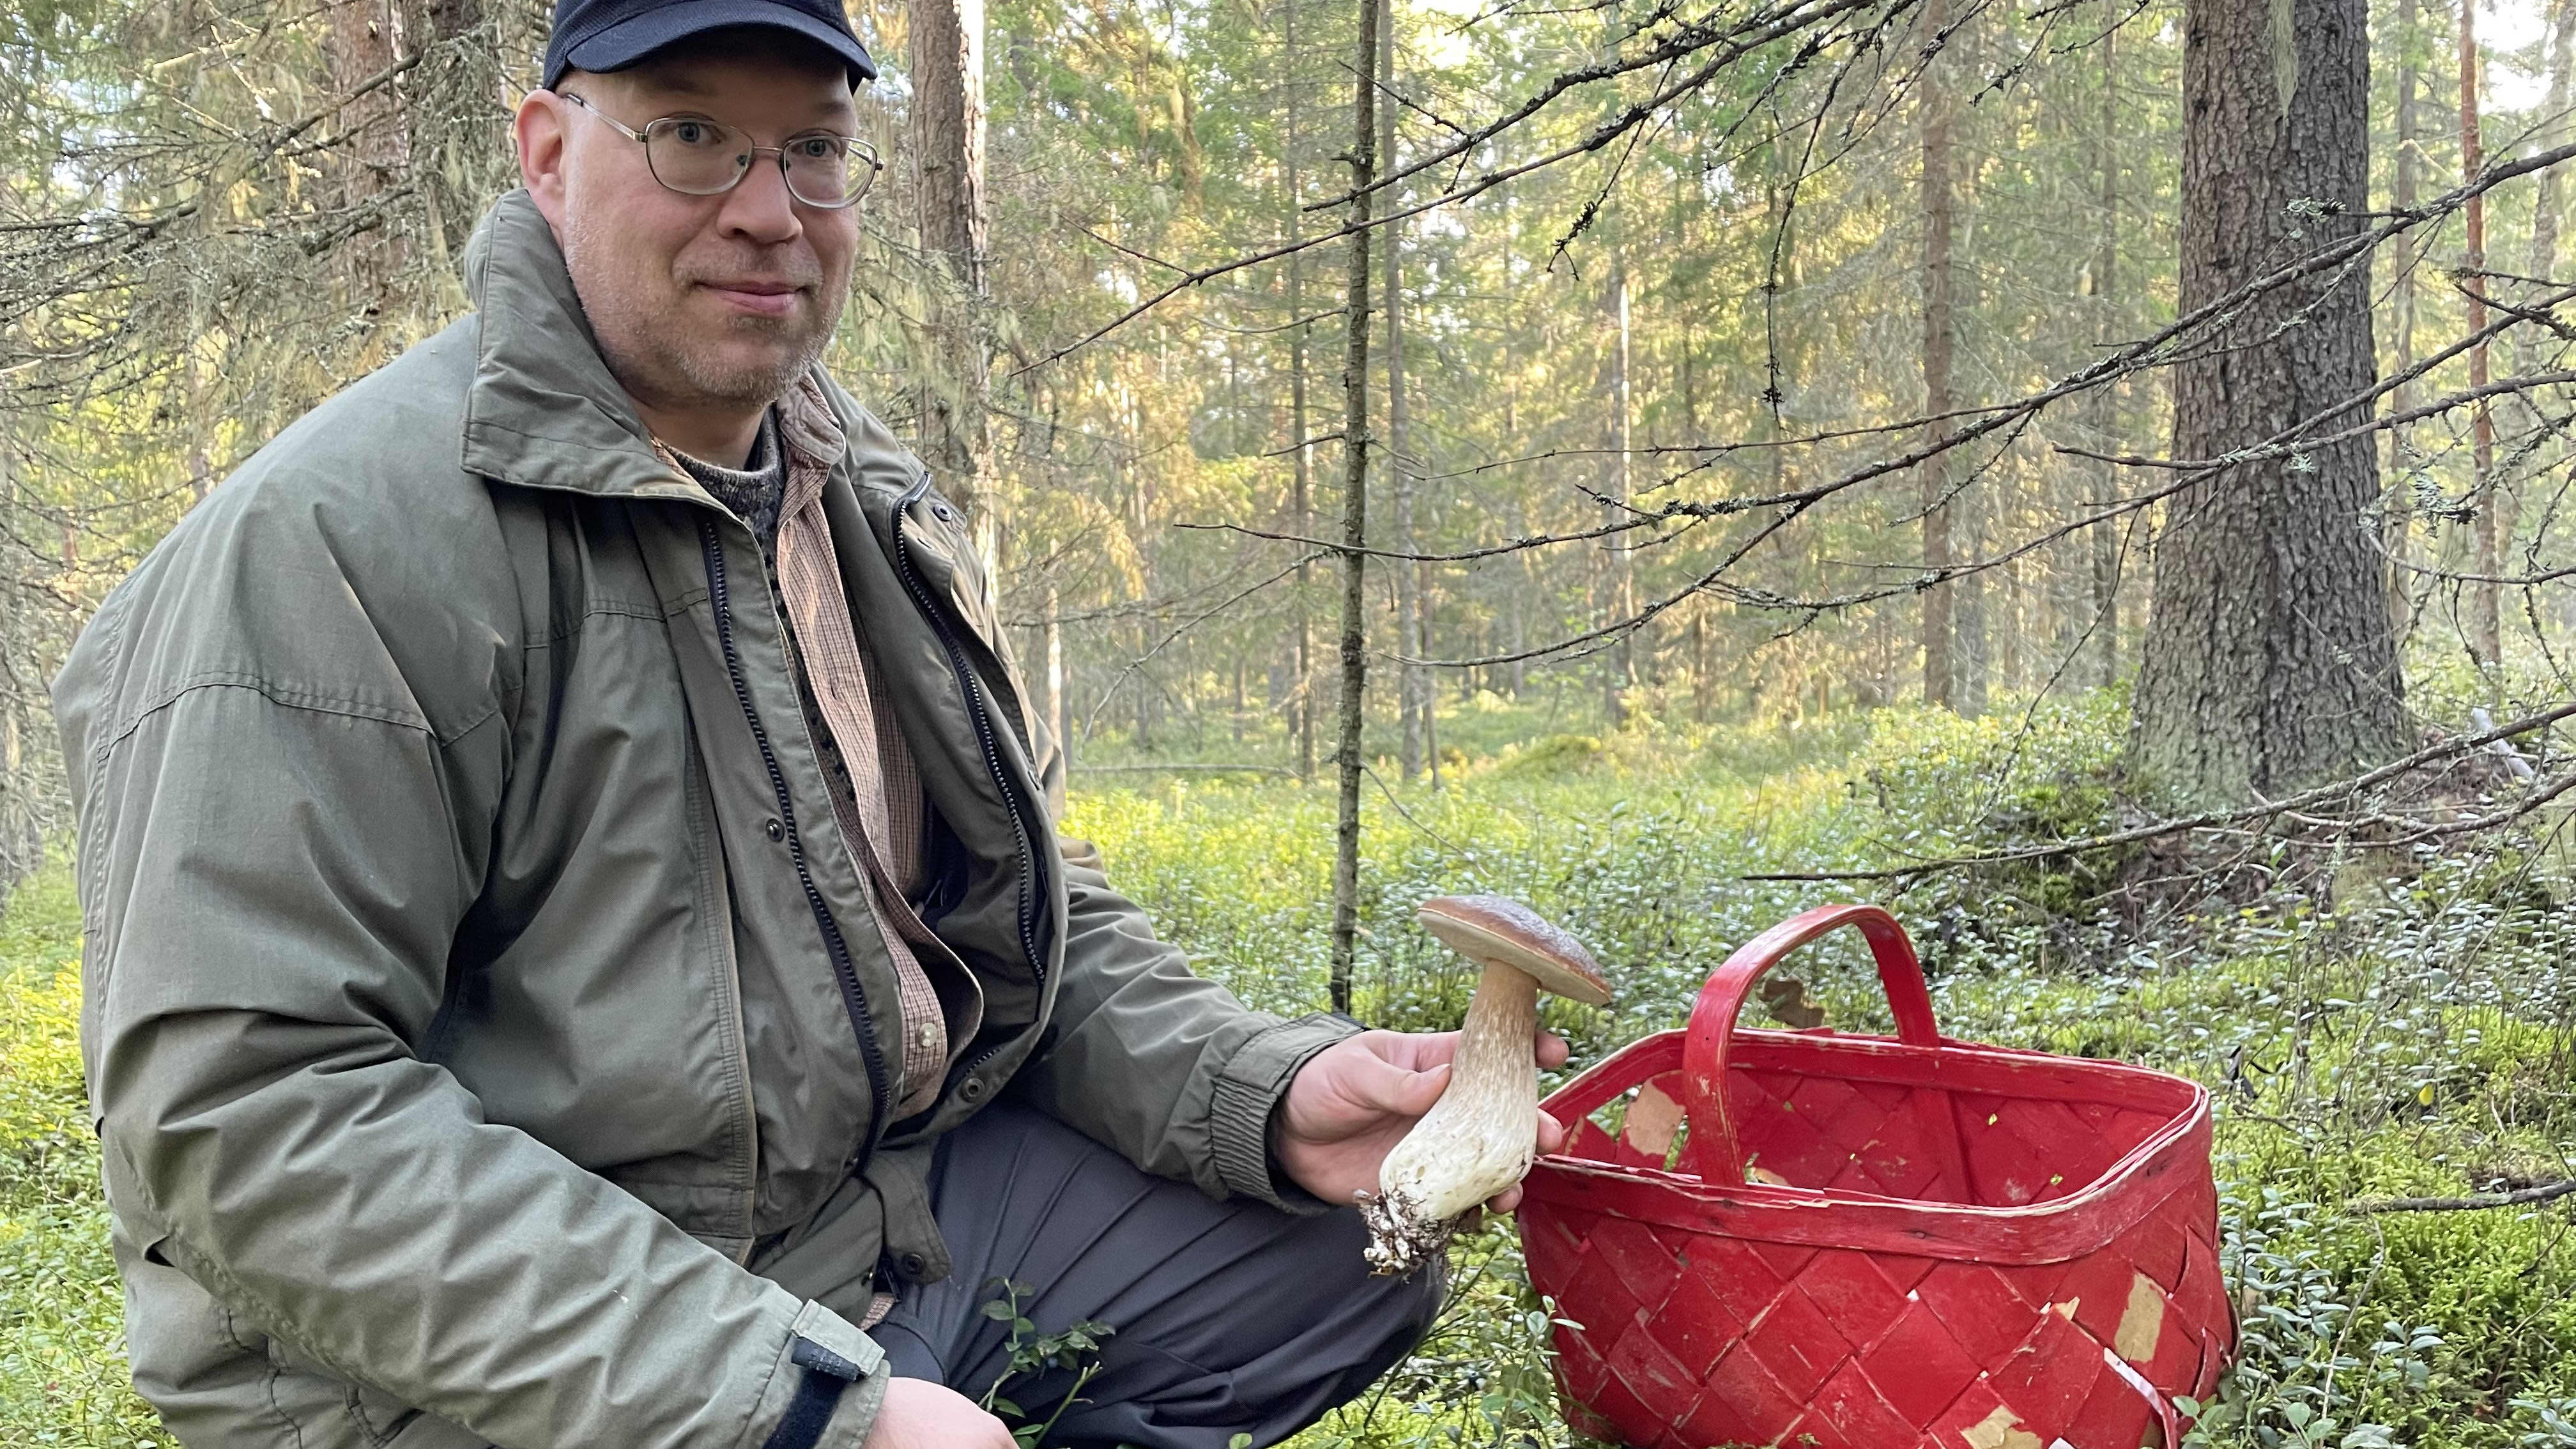 Oulun sieniseuran puheenjohtaja Antti Pekkala mehevä herkkutatti kädessään. 